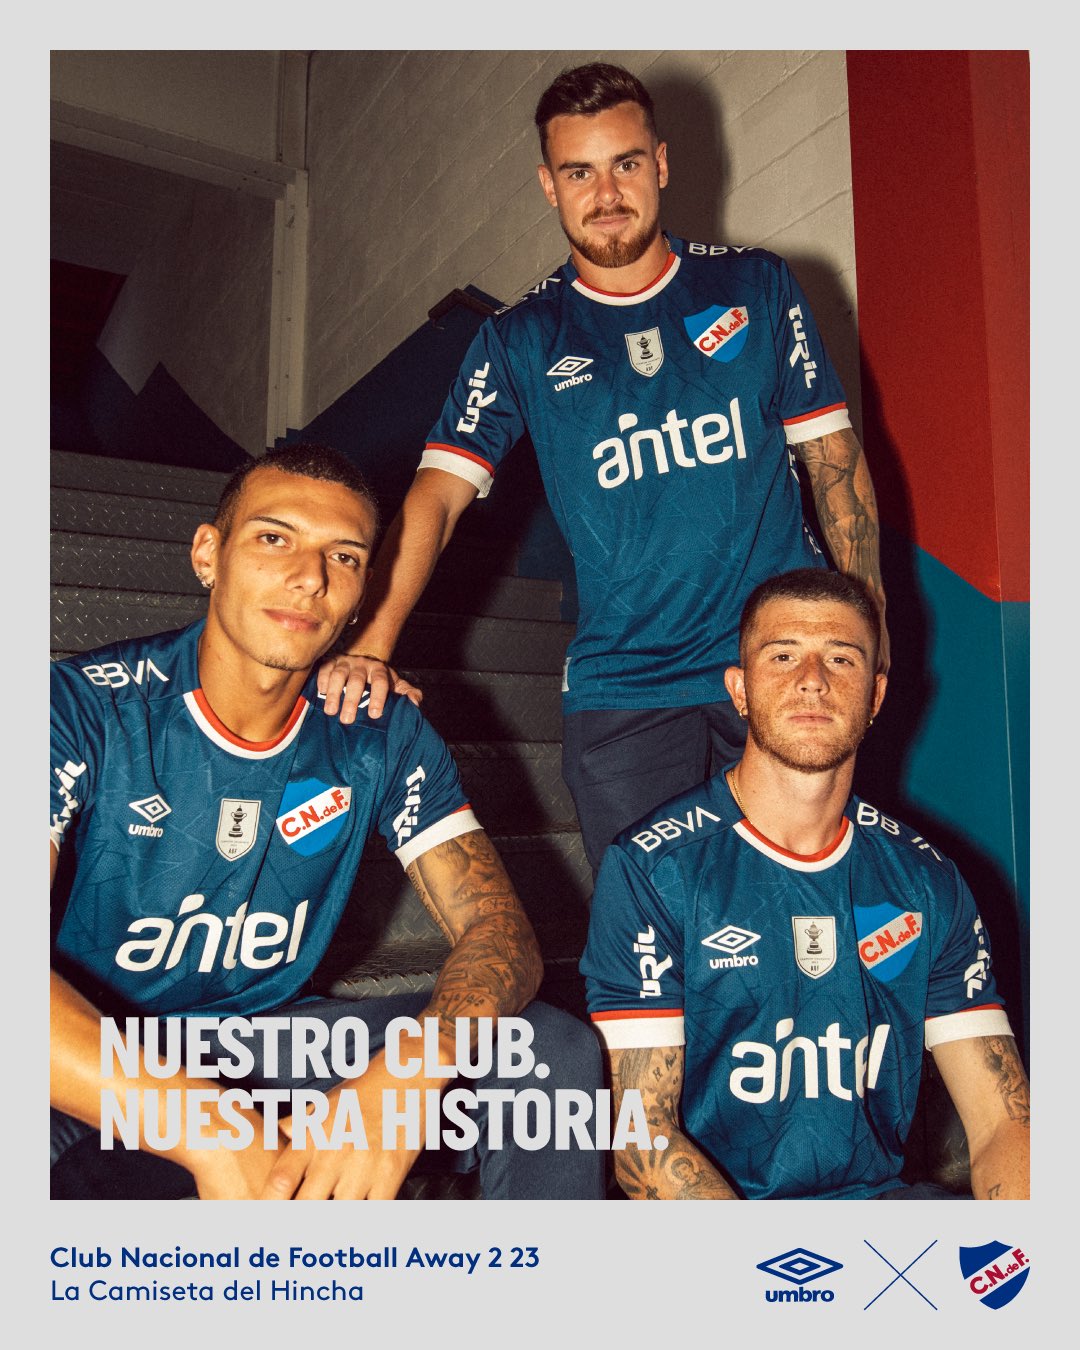 Camisa Nacional do Paraguai - Modelo I